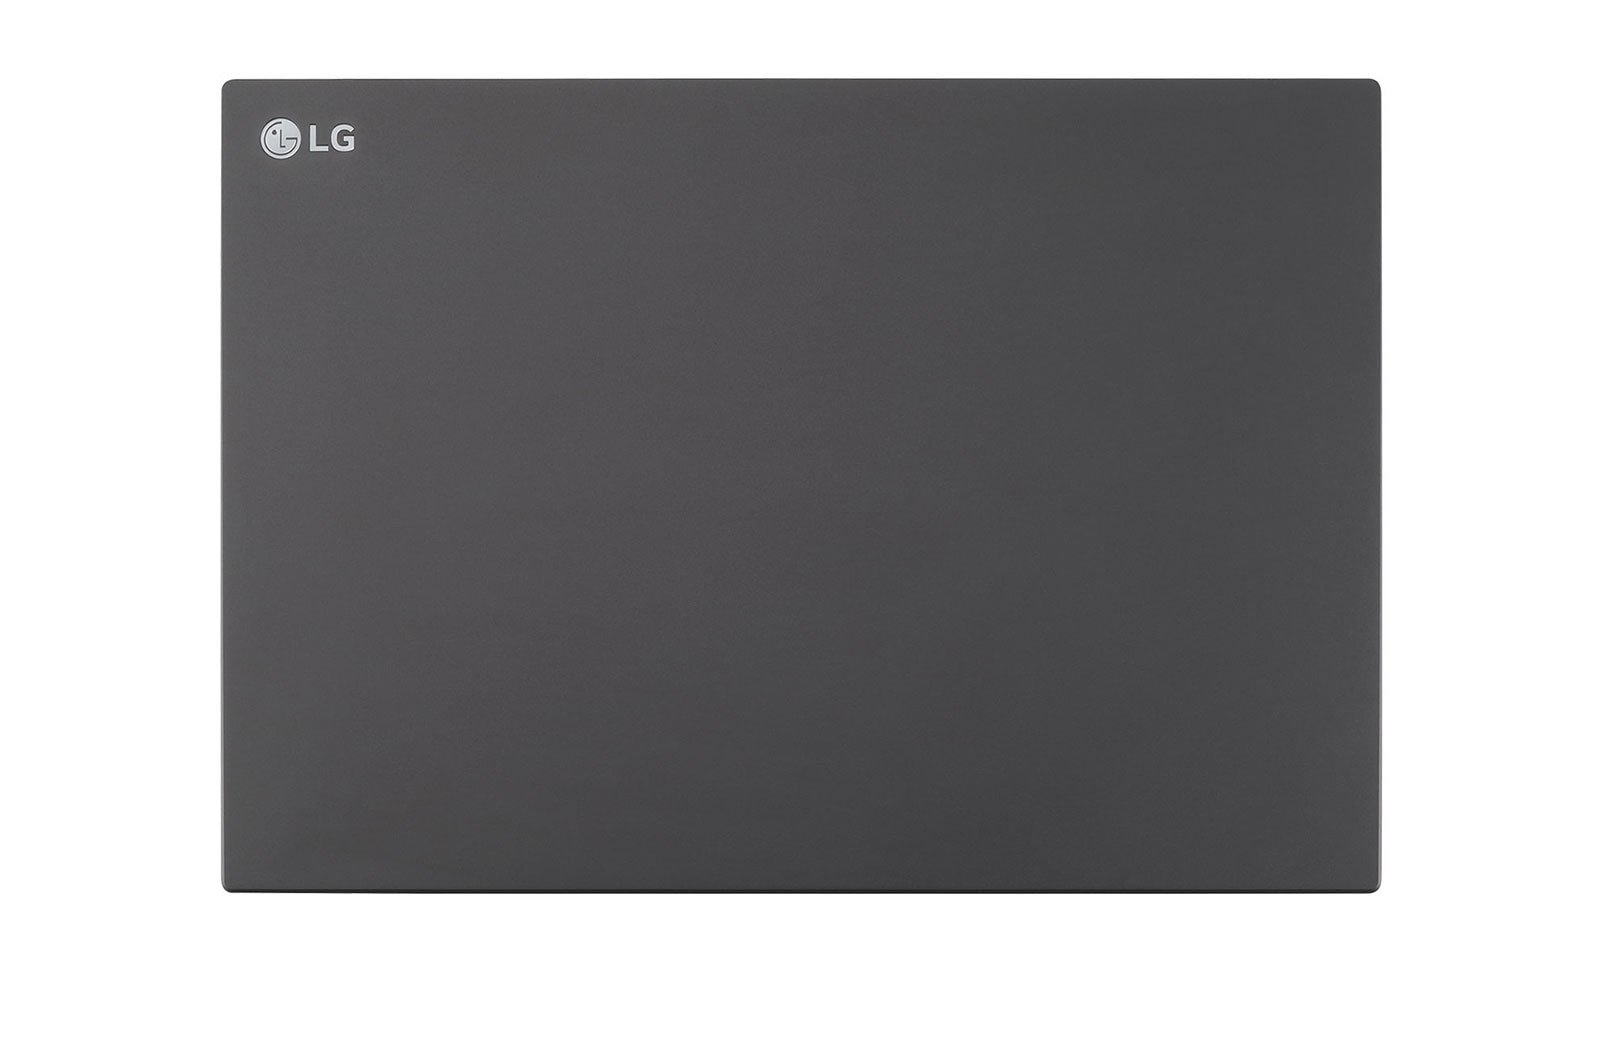 LG UltraPC 14U70Q - Ryzen 5 5625U - 16GB RAM - 512GB SSD